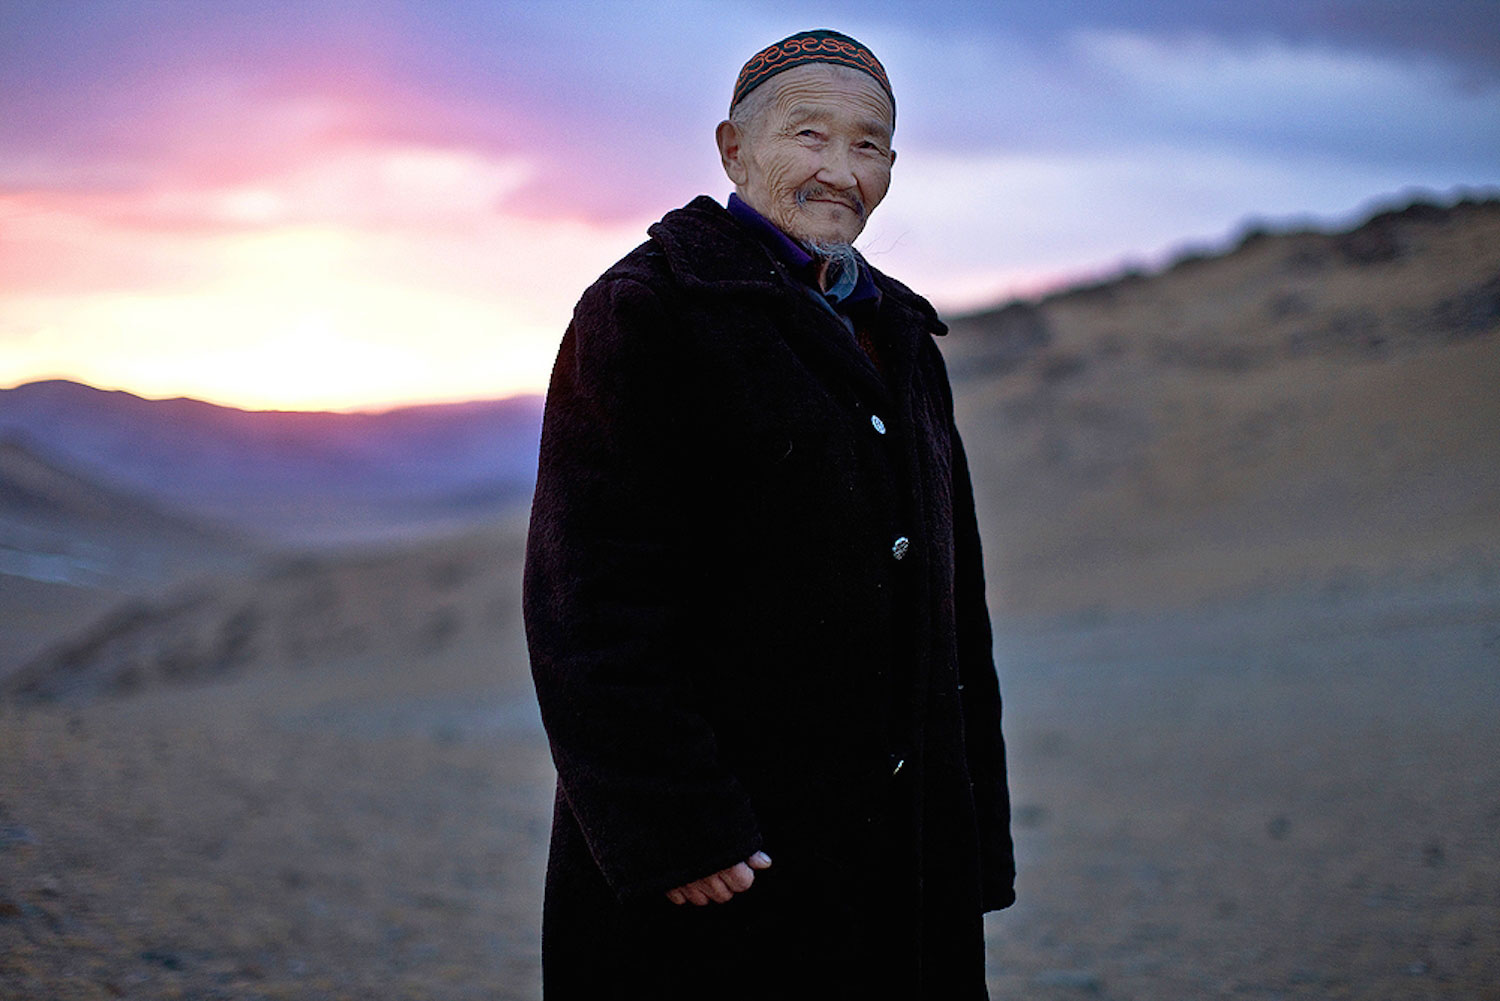 Displaced: Mongolia's Last Kazakh Nomads - Western Mongolia. 2012-13.